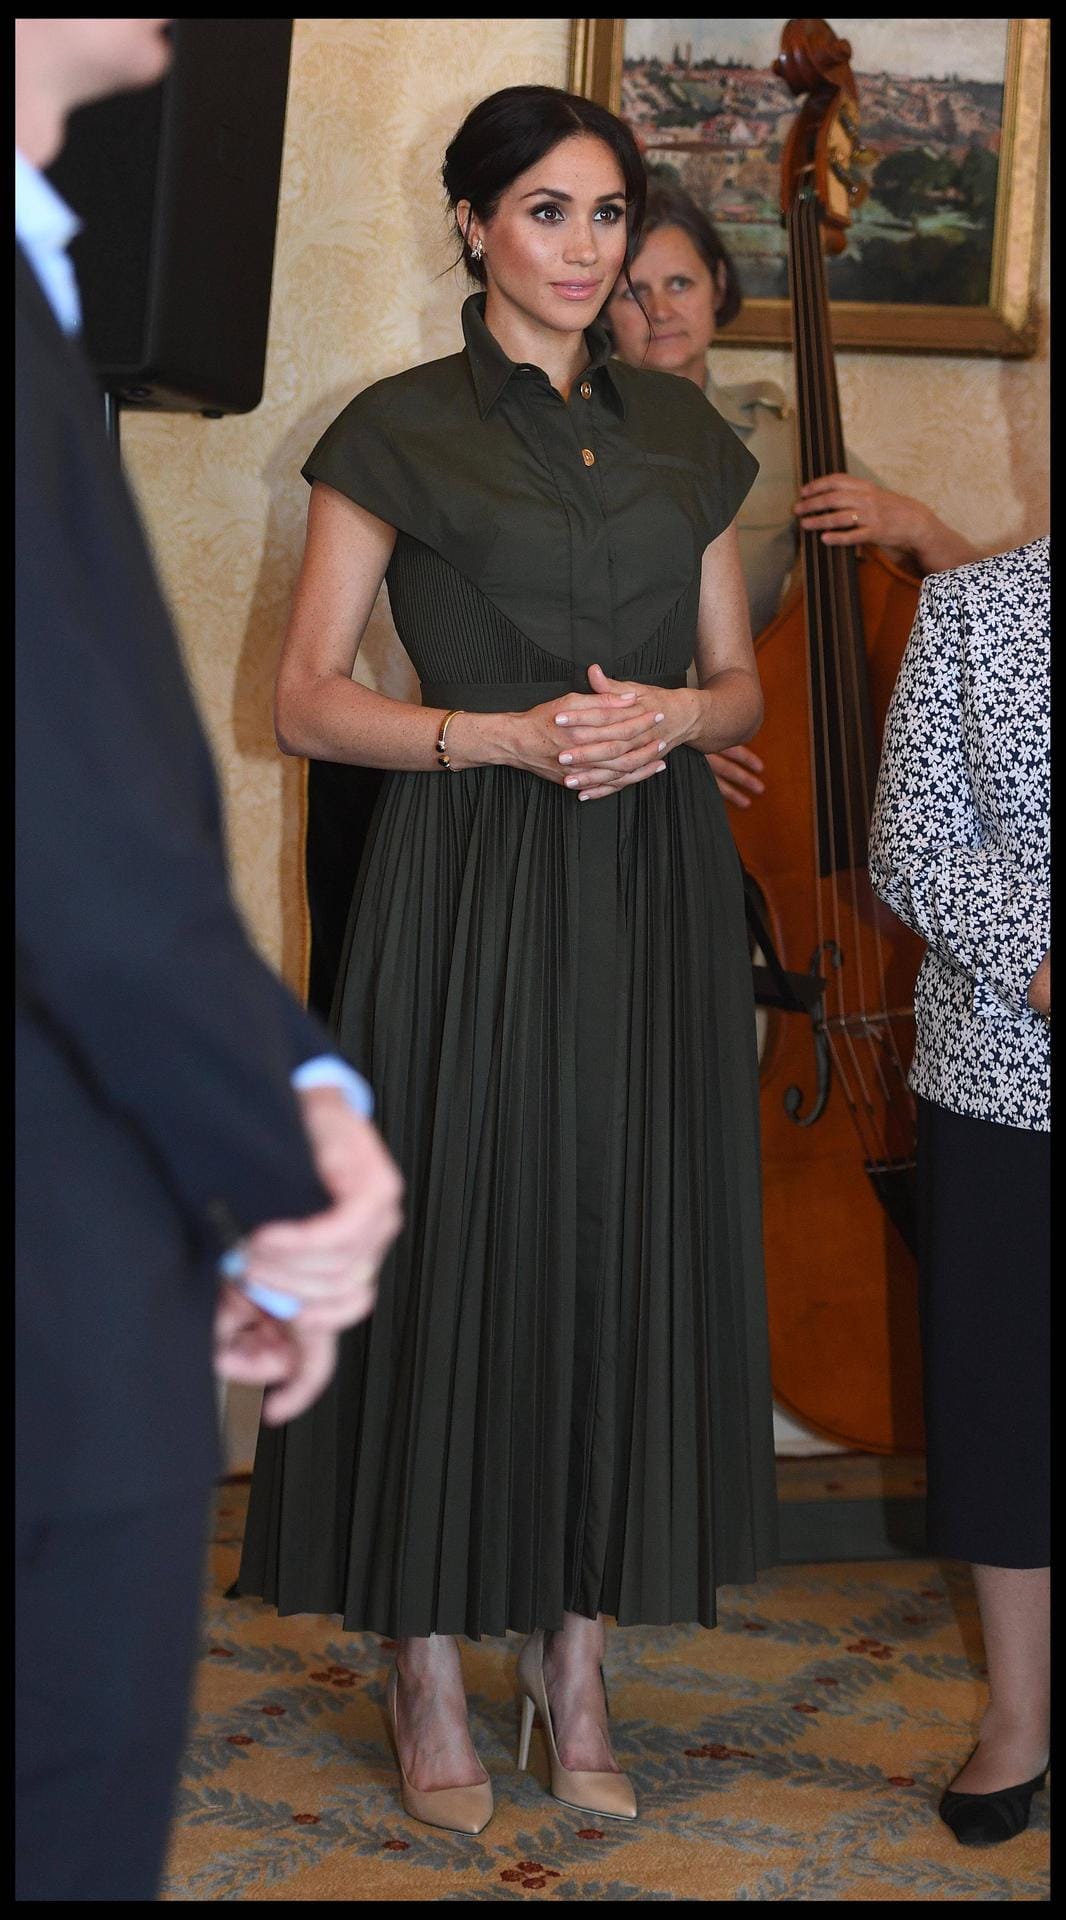 Empfang in Sydney: Meghan trägt ein olivgrünes Kleid des US-amerikanischen Designers Brandon Maxwell.